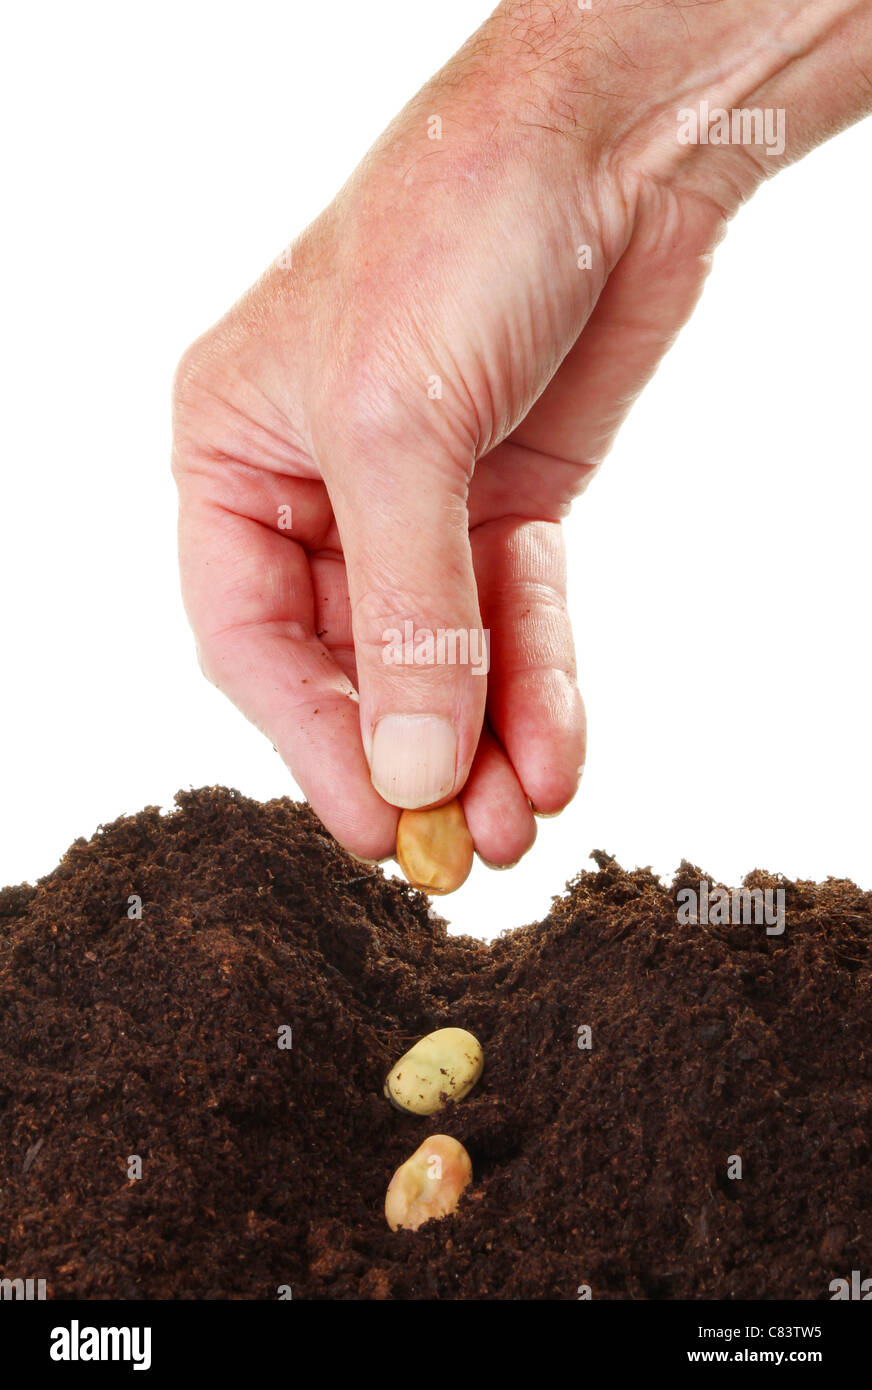 Primo piano di una mano maschi semina Fave semi in un solco nel terreno contro uno sfondo bianco Foto Stock